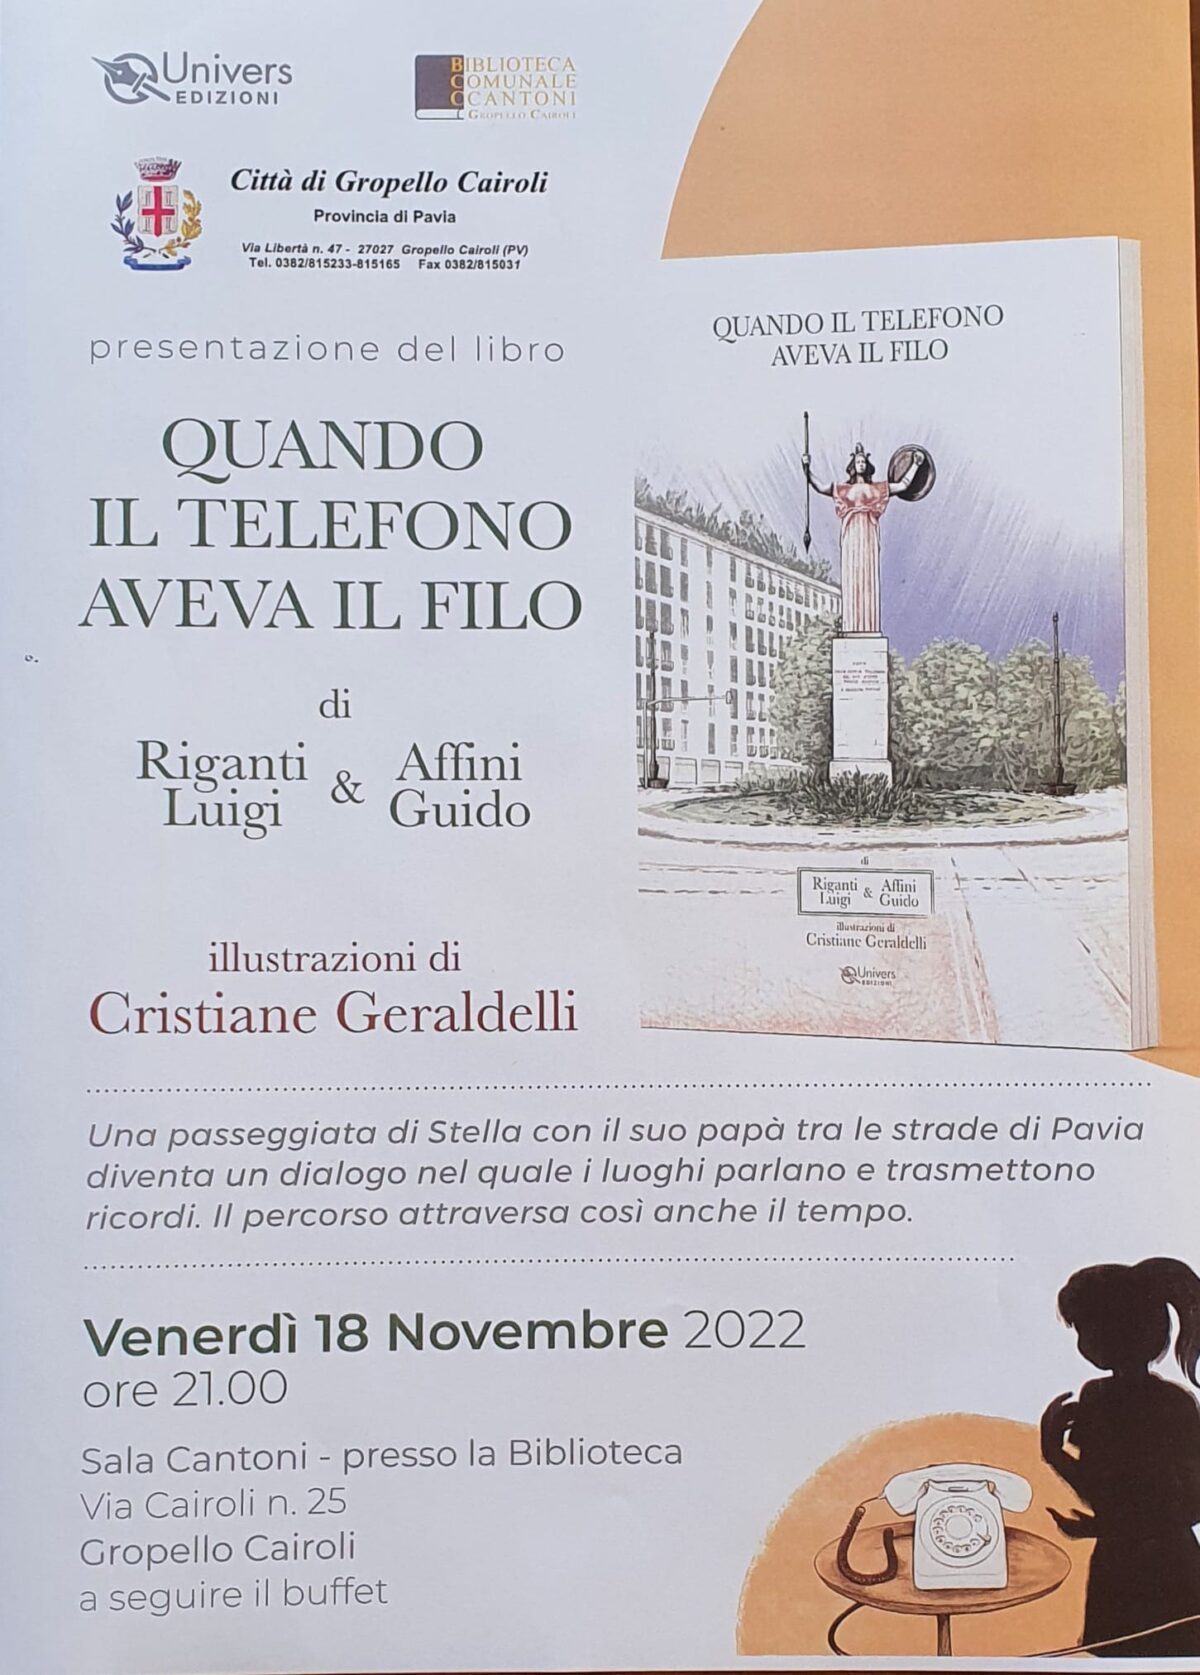 Venerdì 18 novembre ore 21,00, Sala Cantoni  Presentazione del libro “Quando il telefono aveva il filo” di Luigi Riganti e Guido Affini